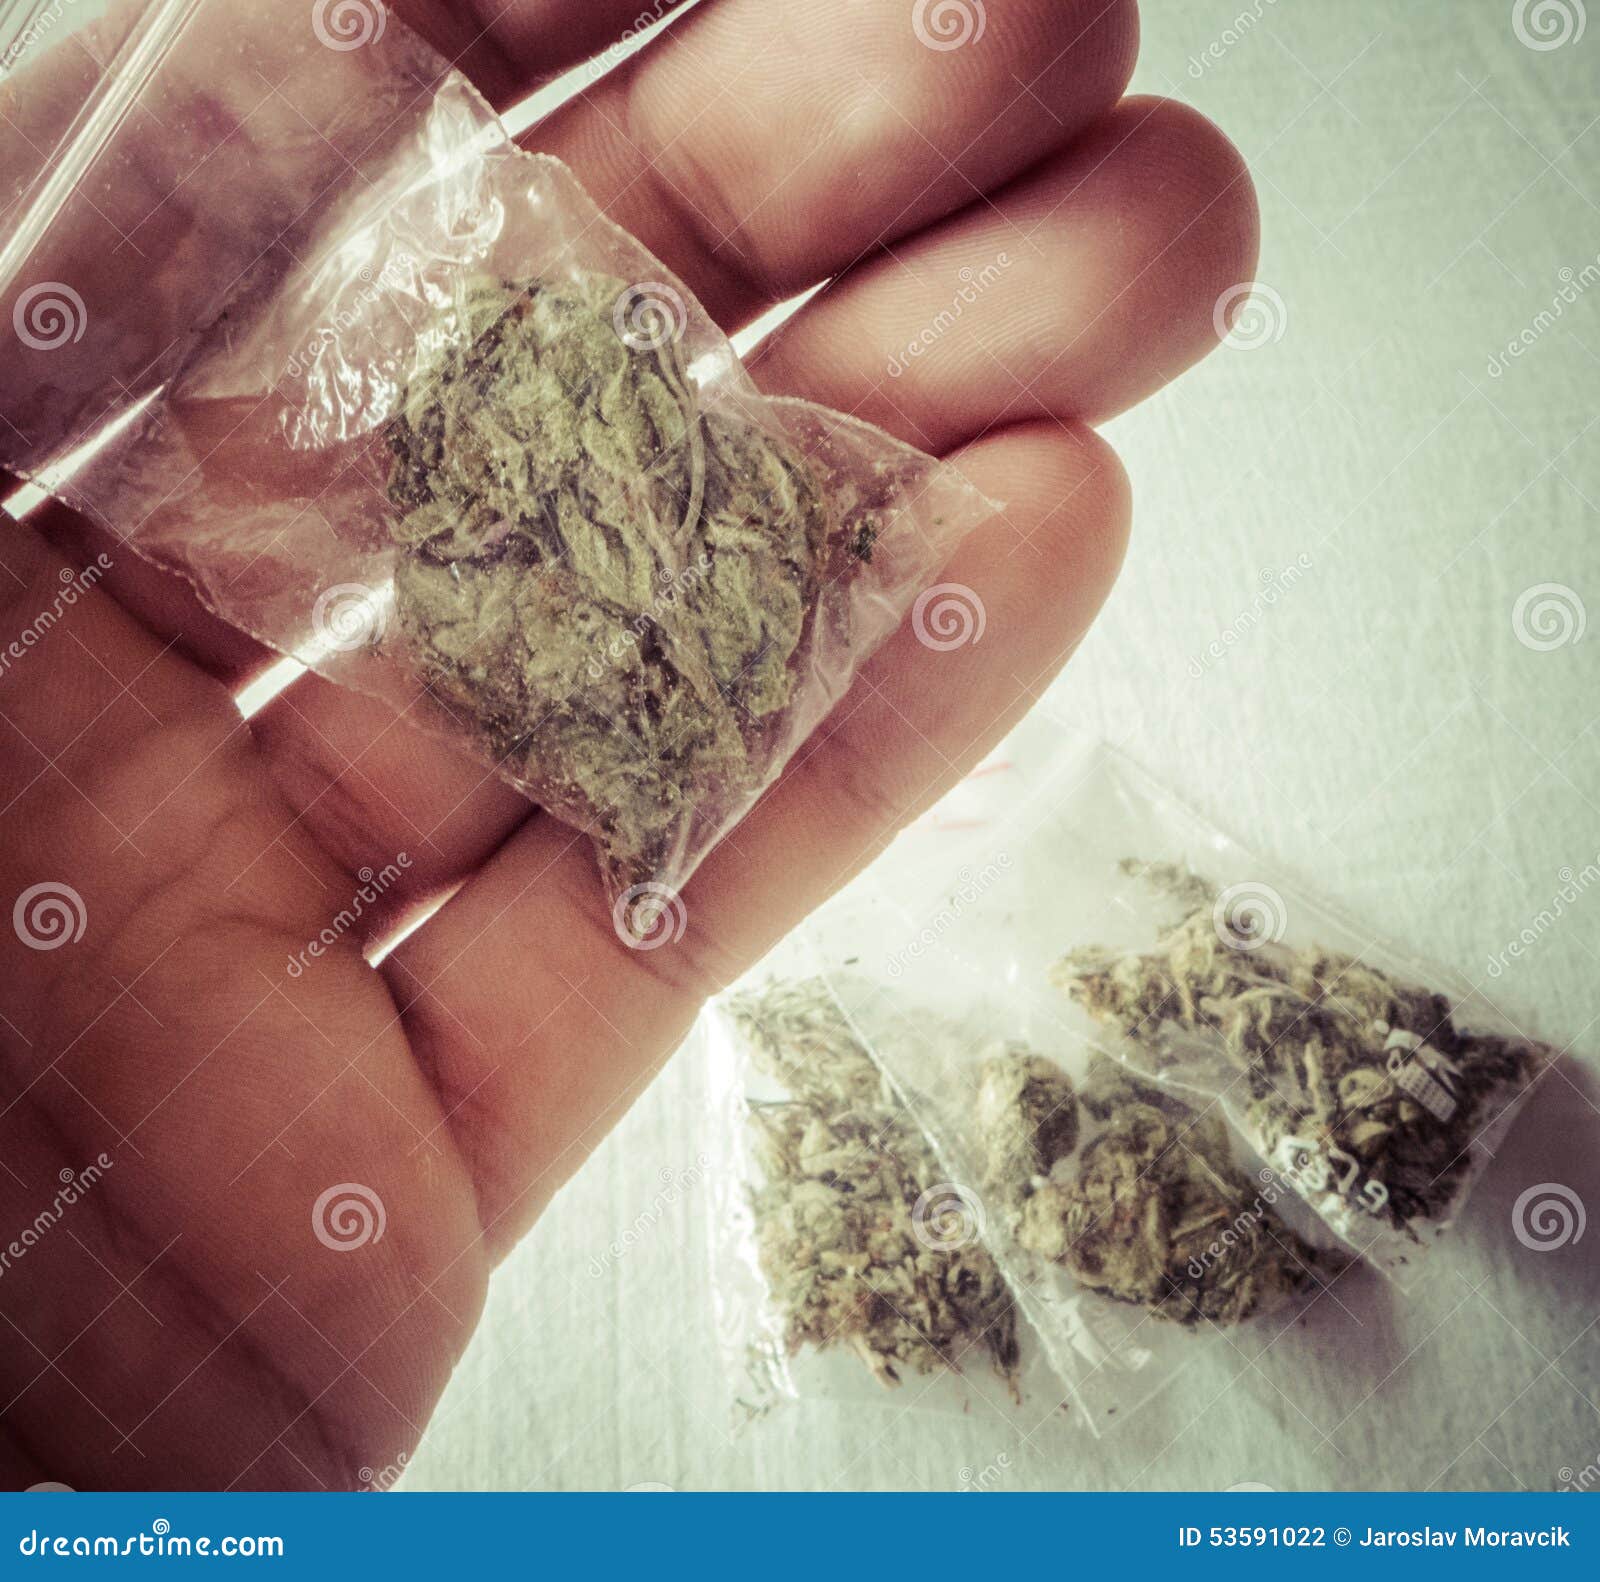 марихуана в пакетиках как выглядит